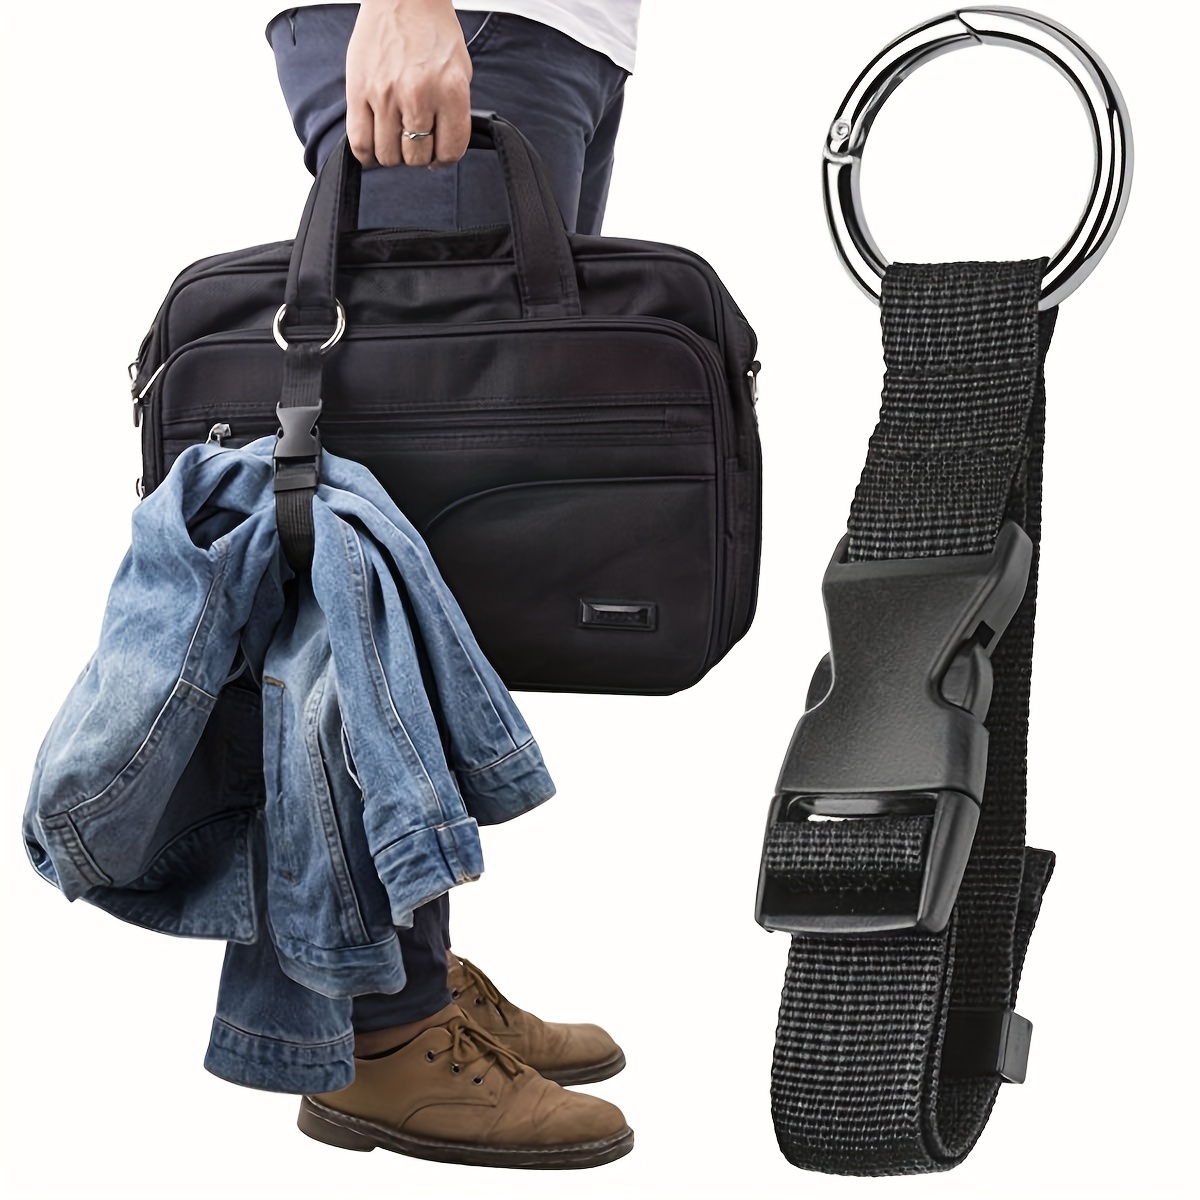 Handbag clip trunk holder jacket gripper luggage belt suitcase belt